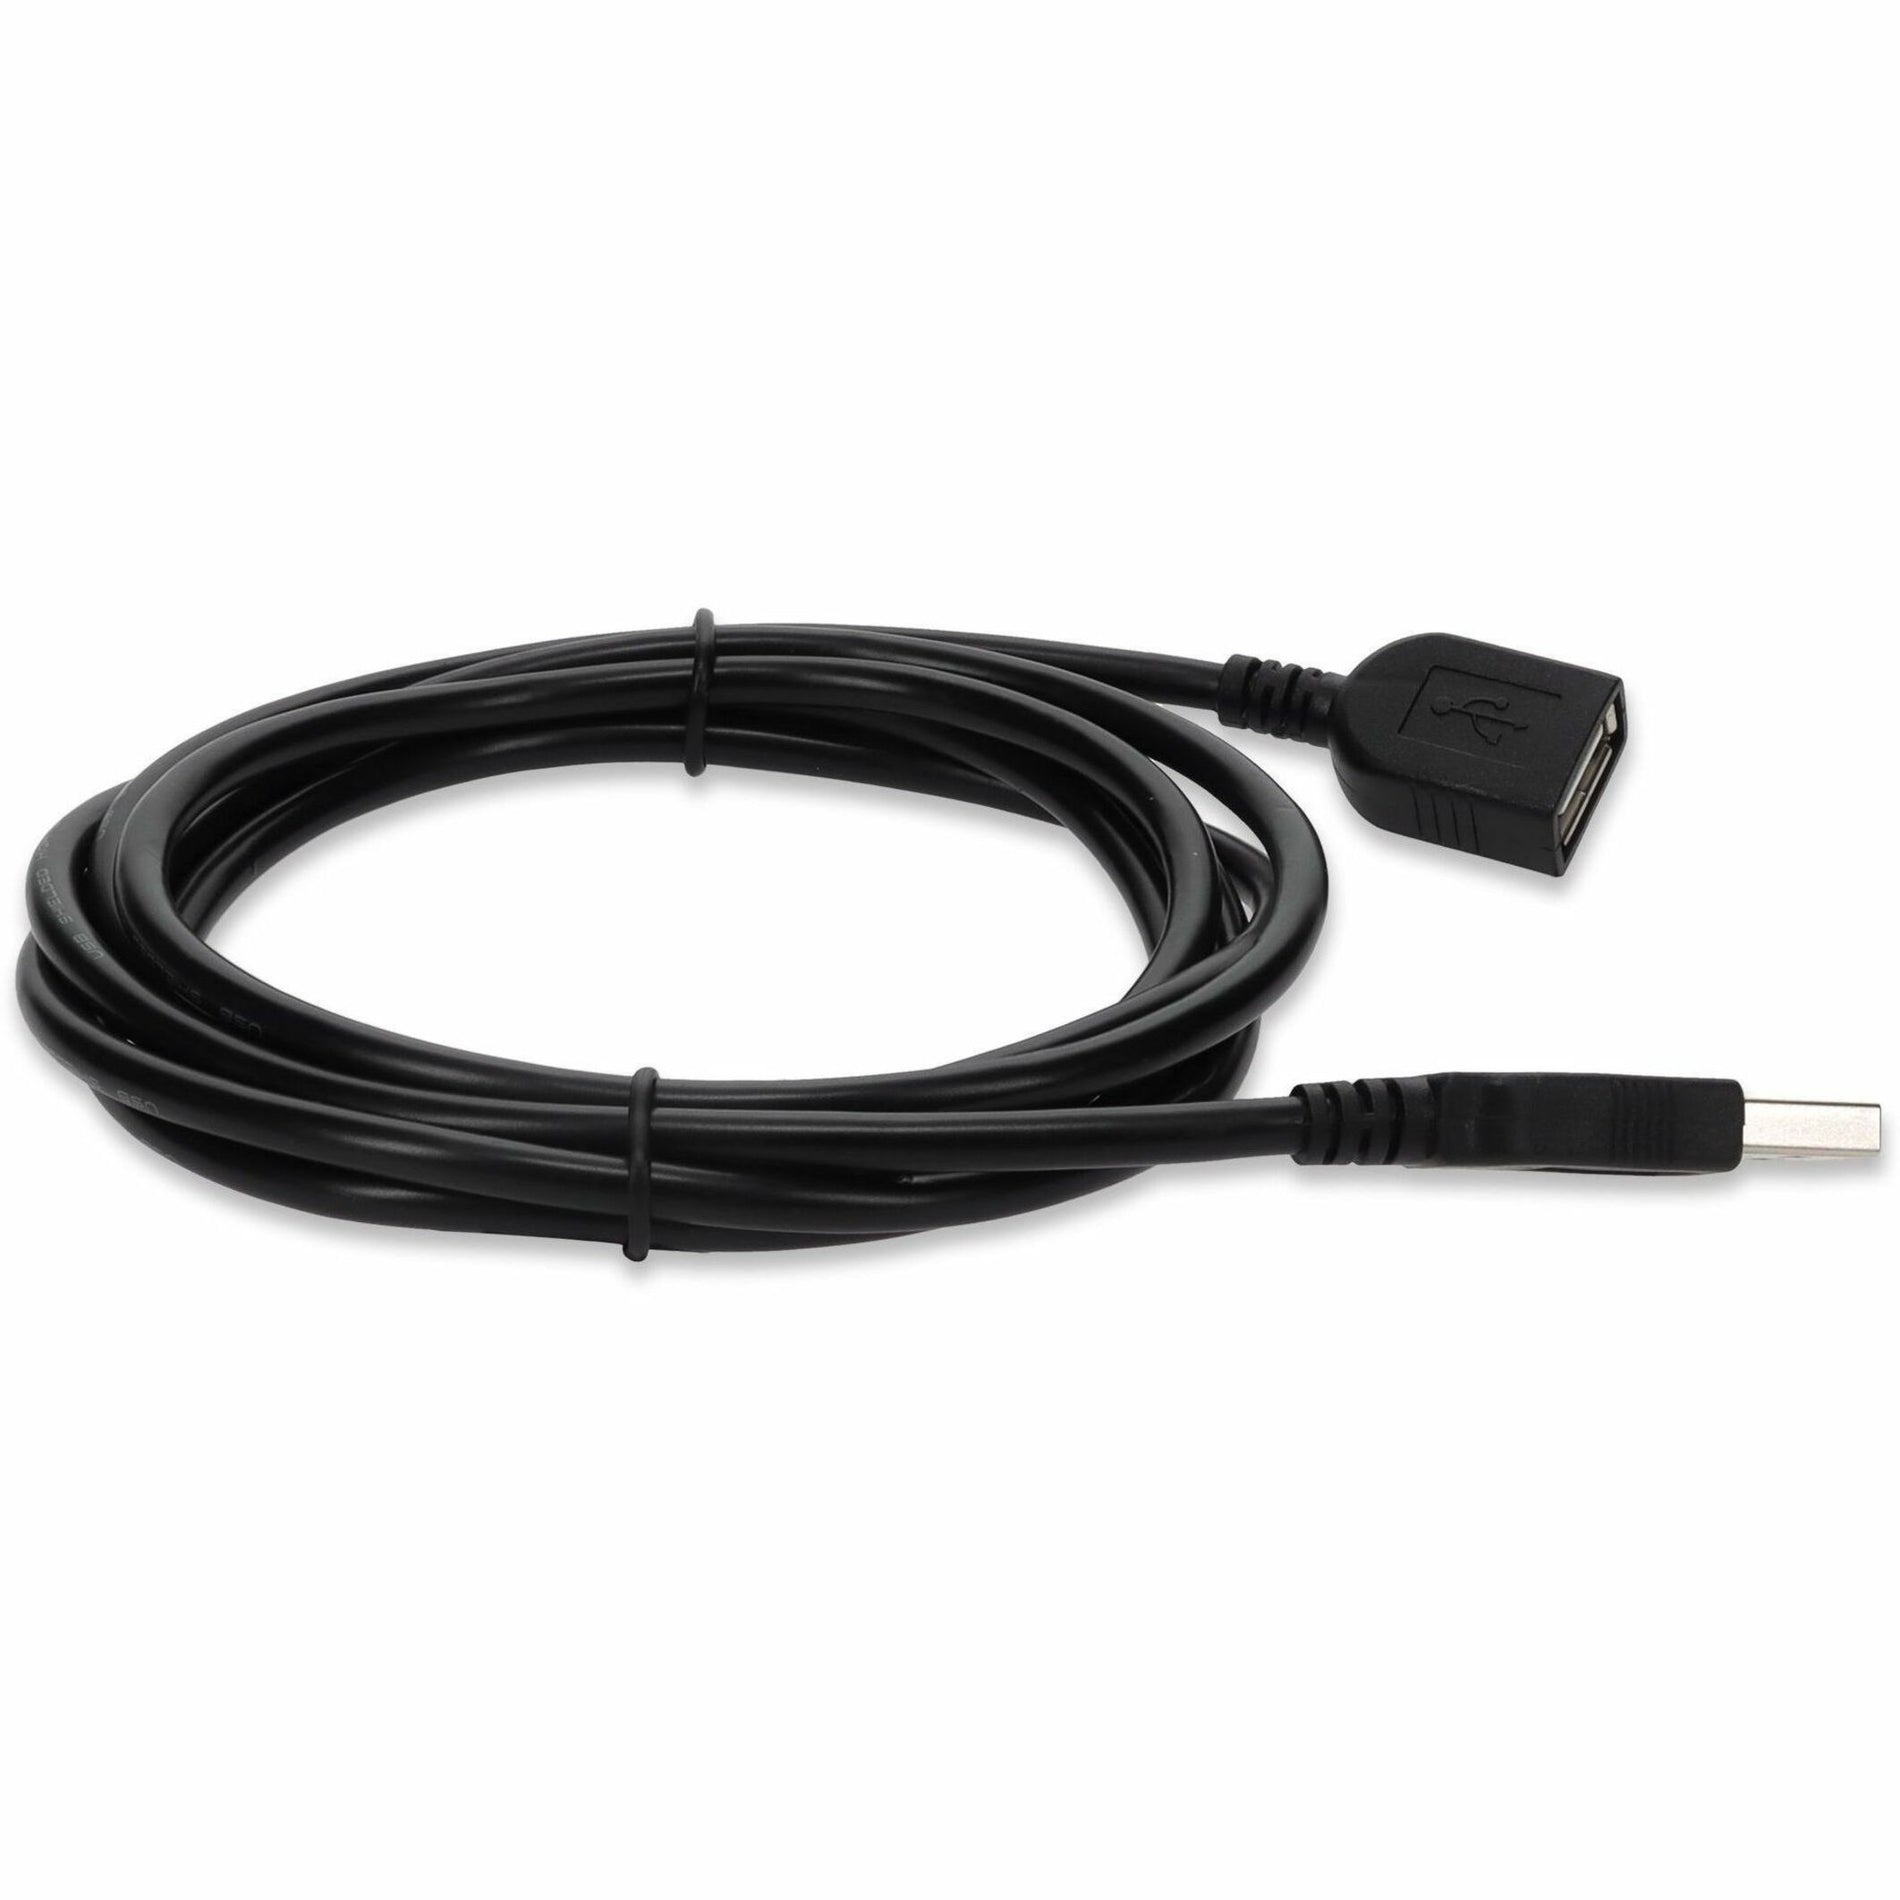 AddOn USBEXTAA15-5PK En vrac 5 Pack 15ft USB 2.0 Un Câble d'Extension A - M/F 3 Garantie Année Conducteur en Cuivre Noir